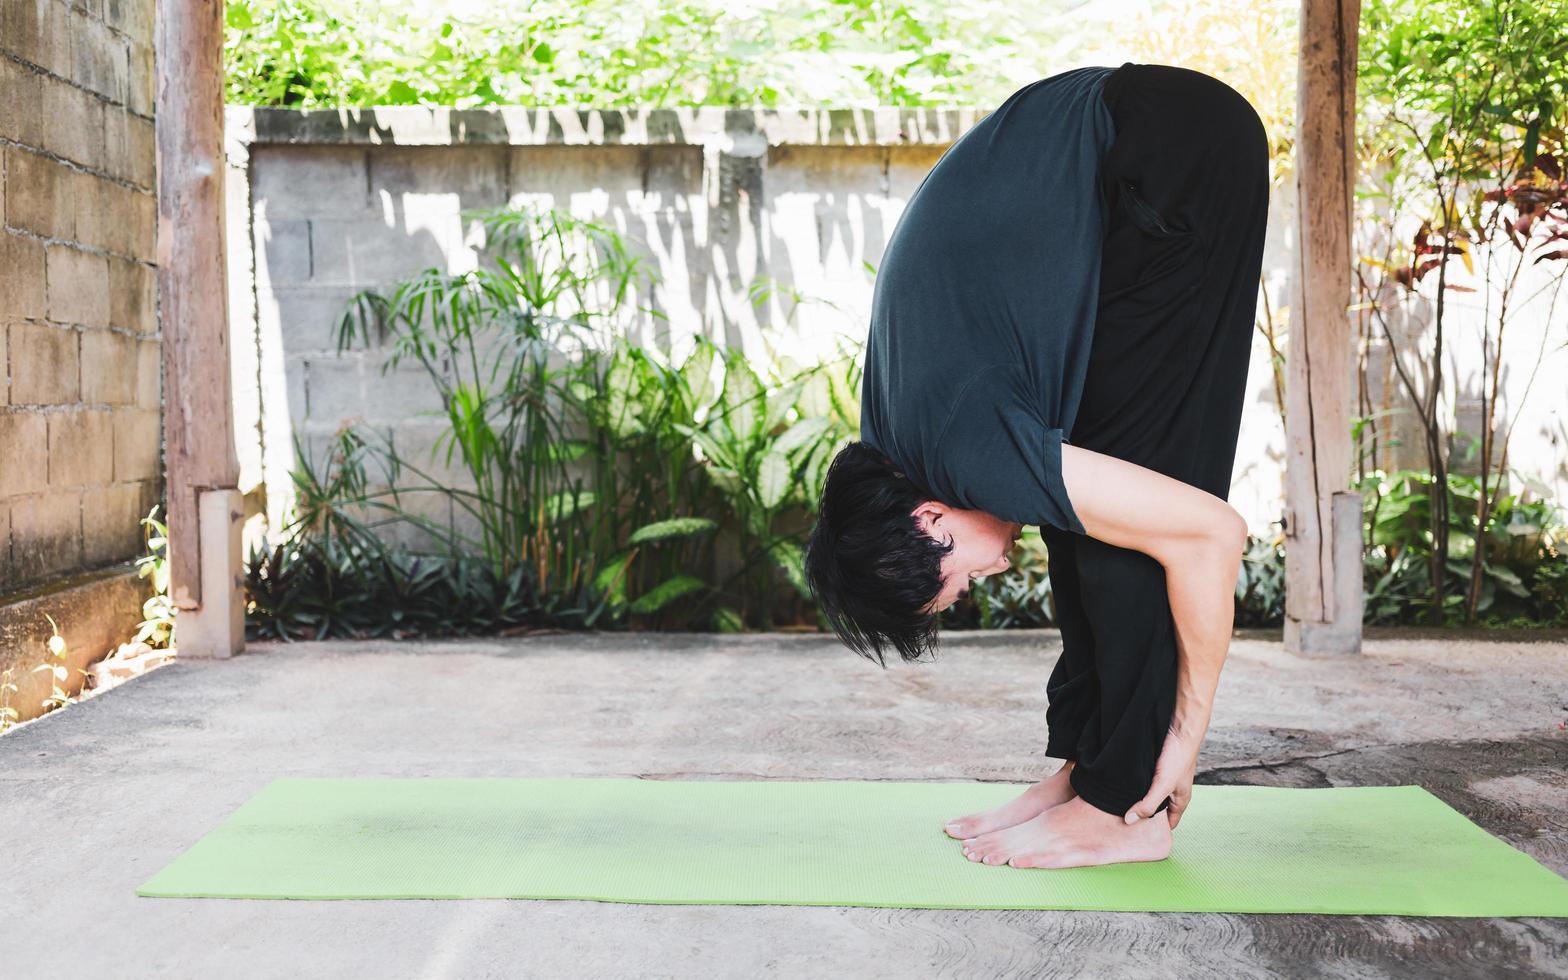 gesundes lebenskonzept des jungen asiatischen mannes, der yoga asana uttanasana praktiziert - nach vorne stehende faltenhaltung, trainieren, posen auf einer grünen yogamatte. Bewegung im Freien im Garten. gesunder Lebensstil foto